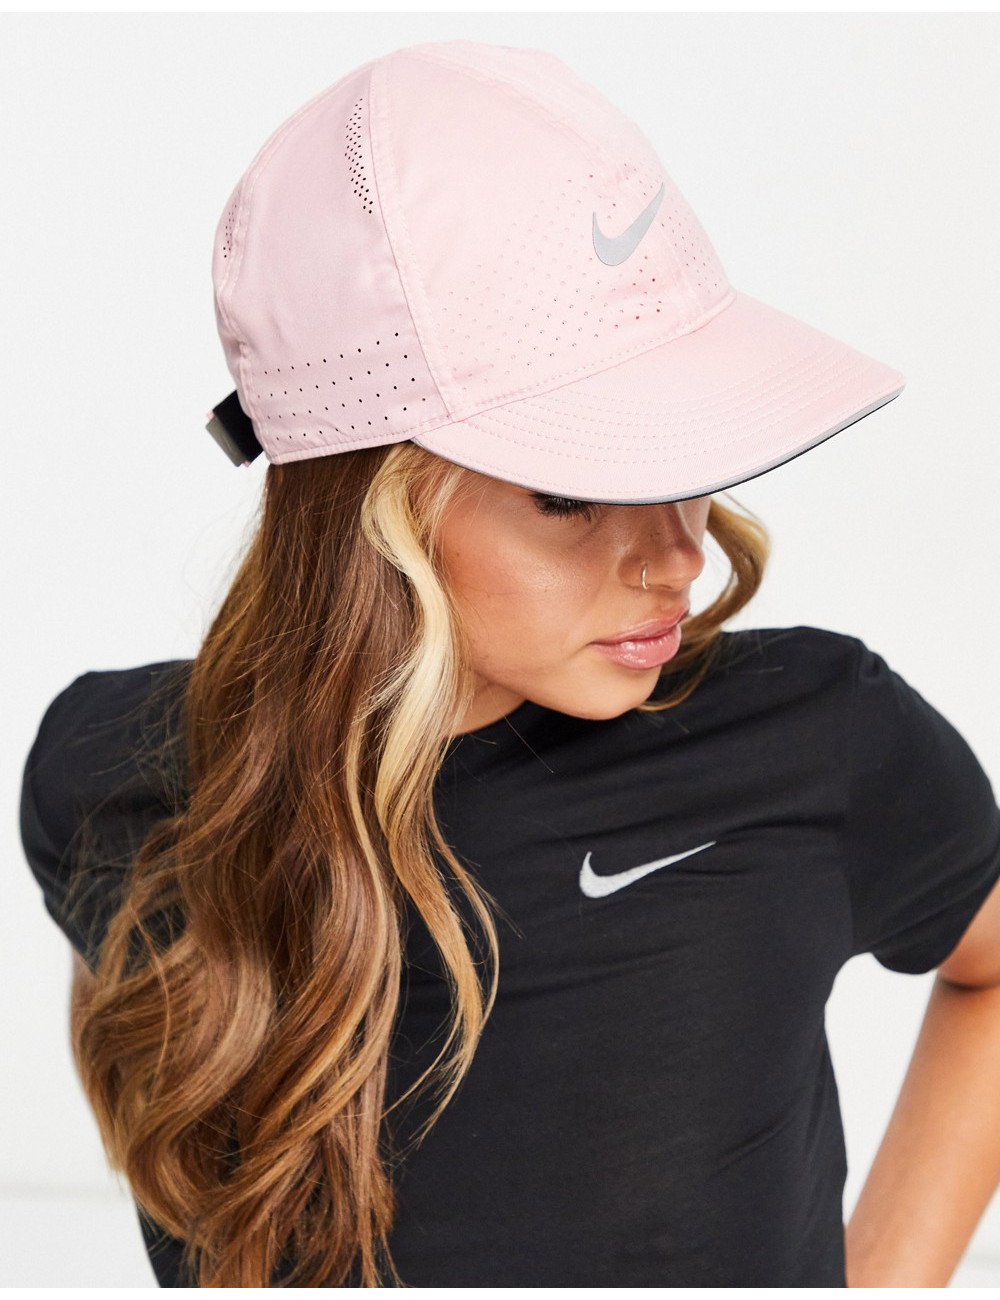 Nike Running cap in pink